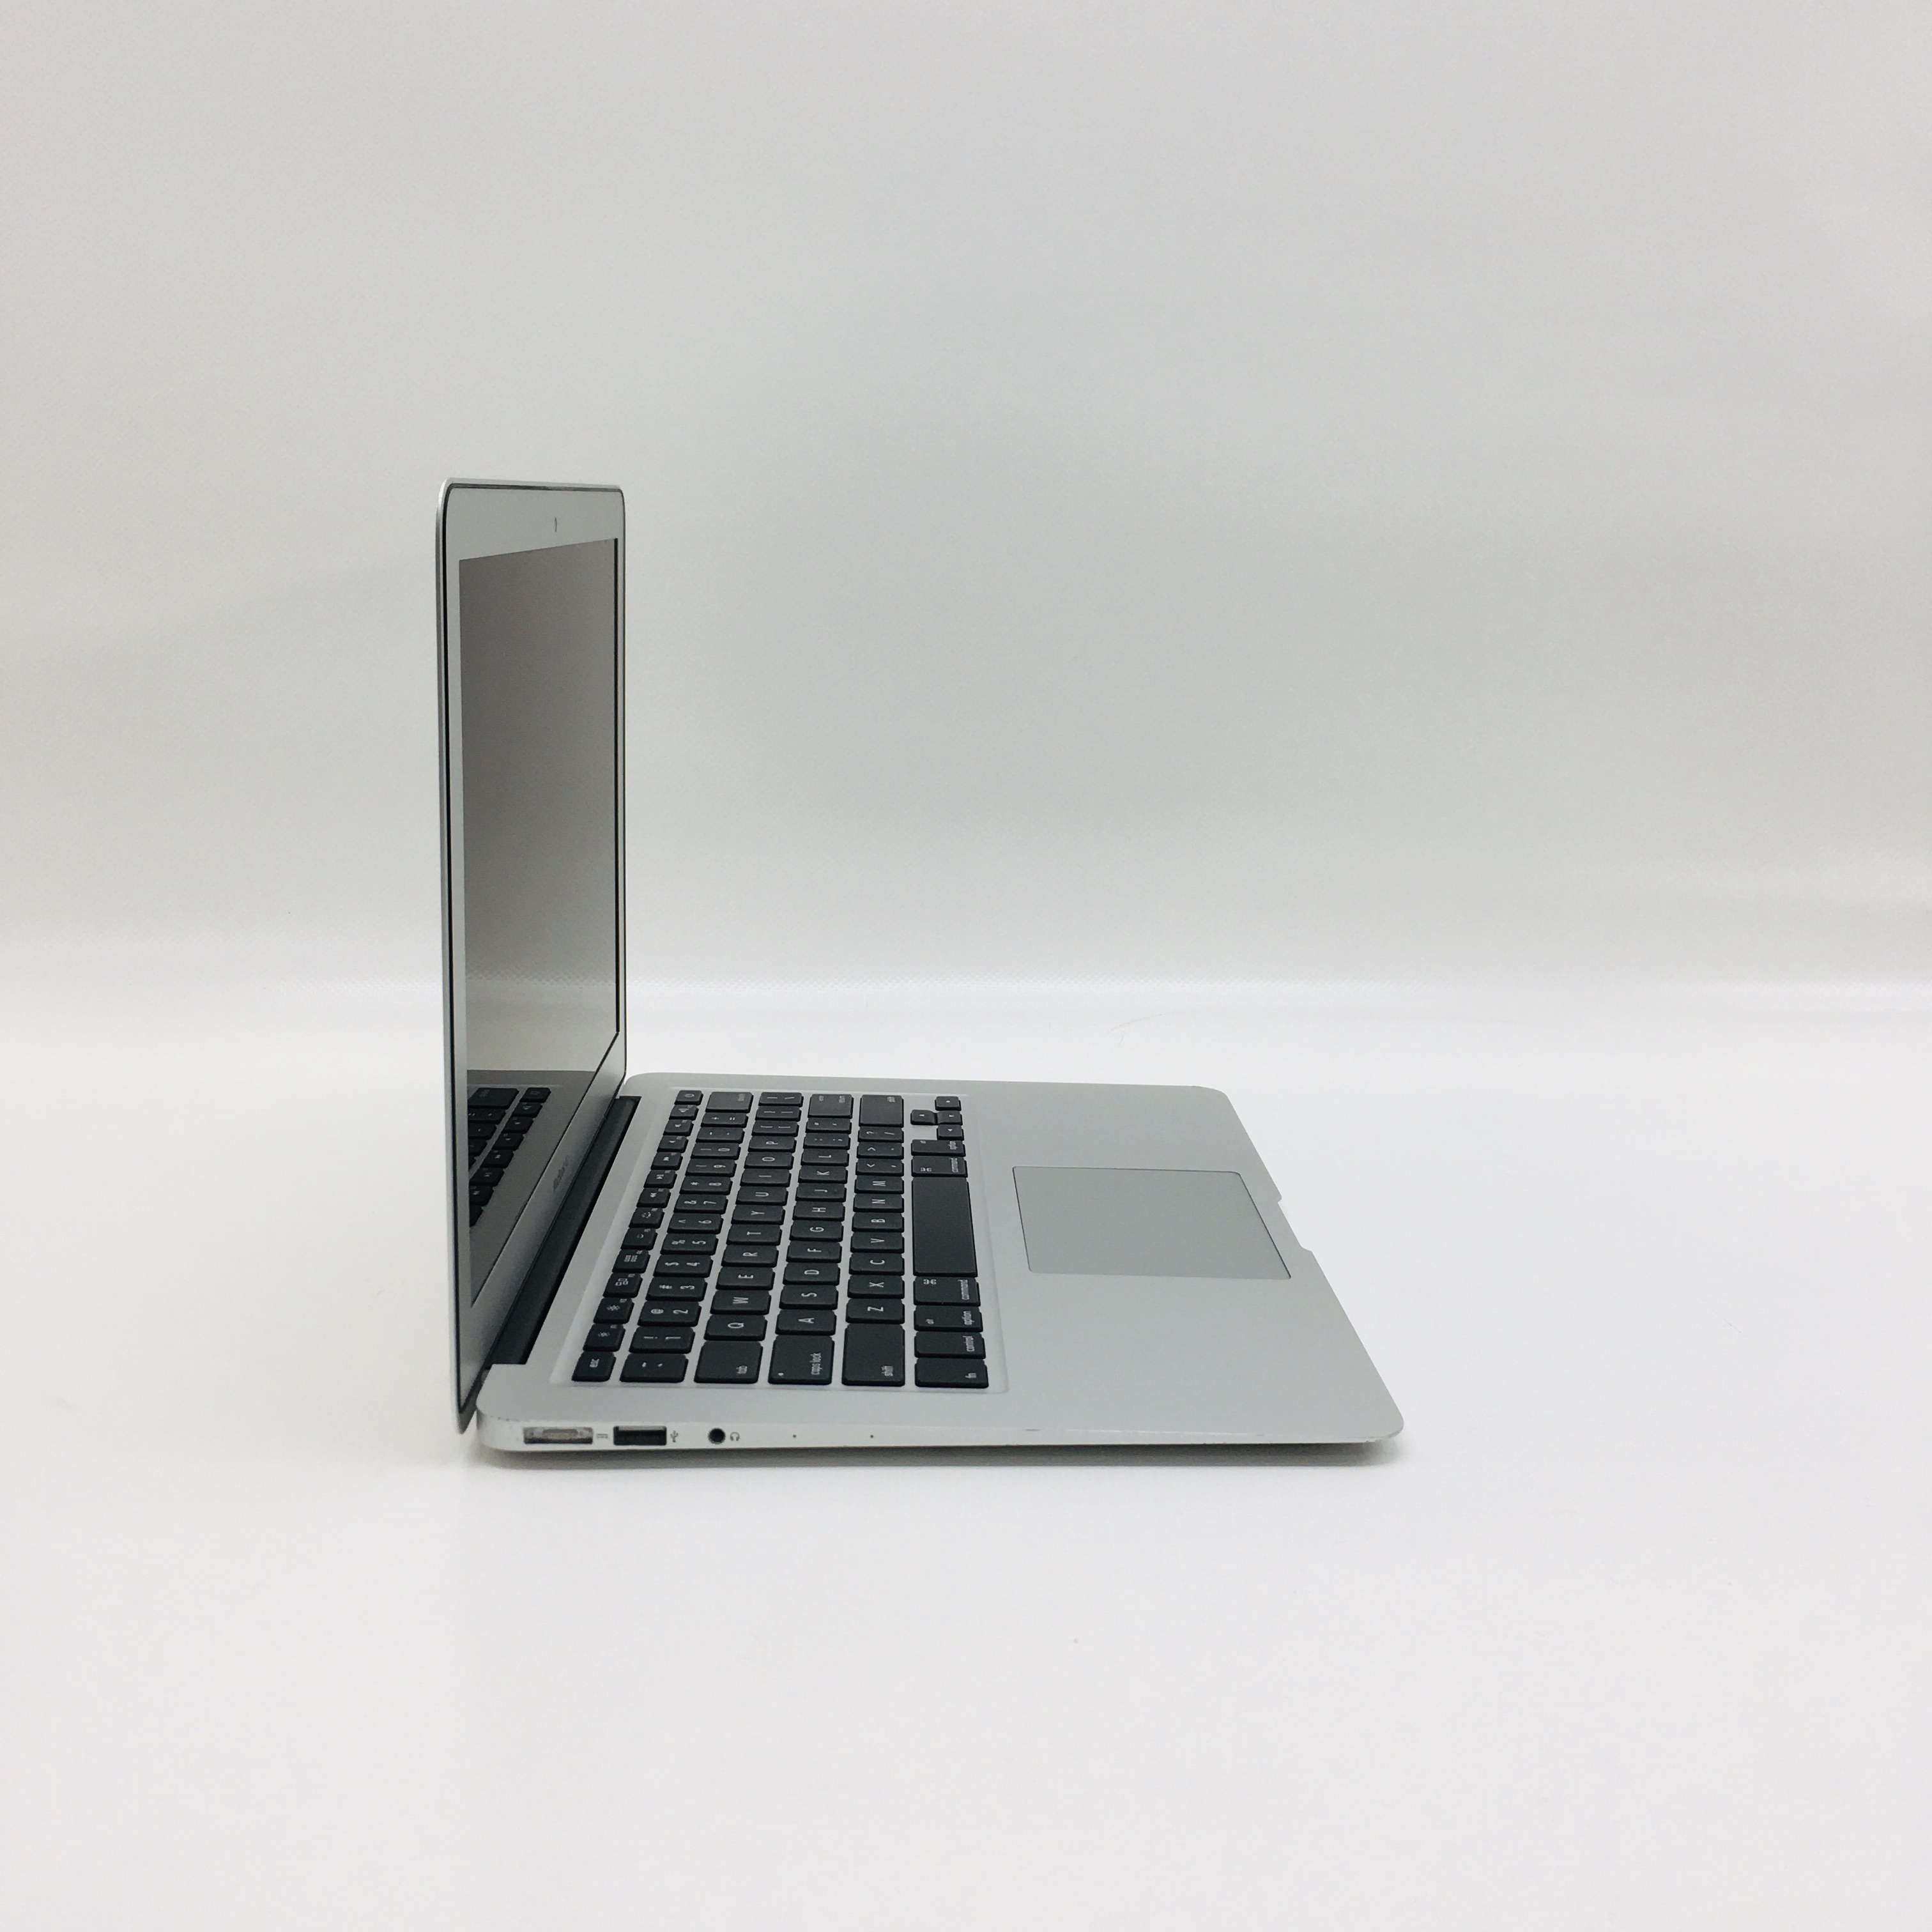 MacBook Air 13" Mid 2017 (Intel Core i5 1.8 GHz 8 GB RAM 512 GB SSD), Intel Core i5 1.8 GHz, 8 GB RAM, 512 GB SSD, image 2